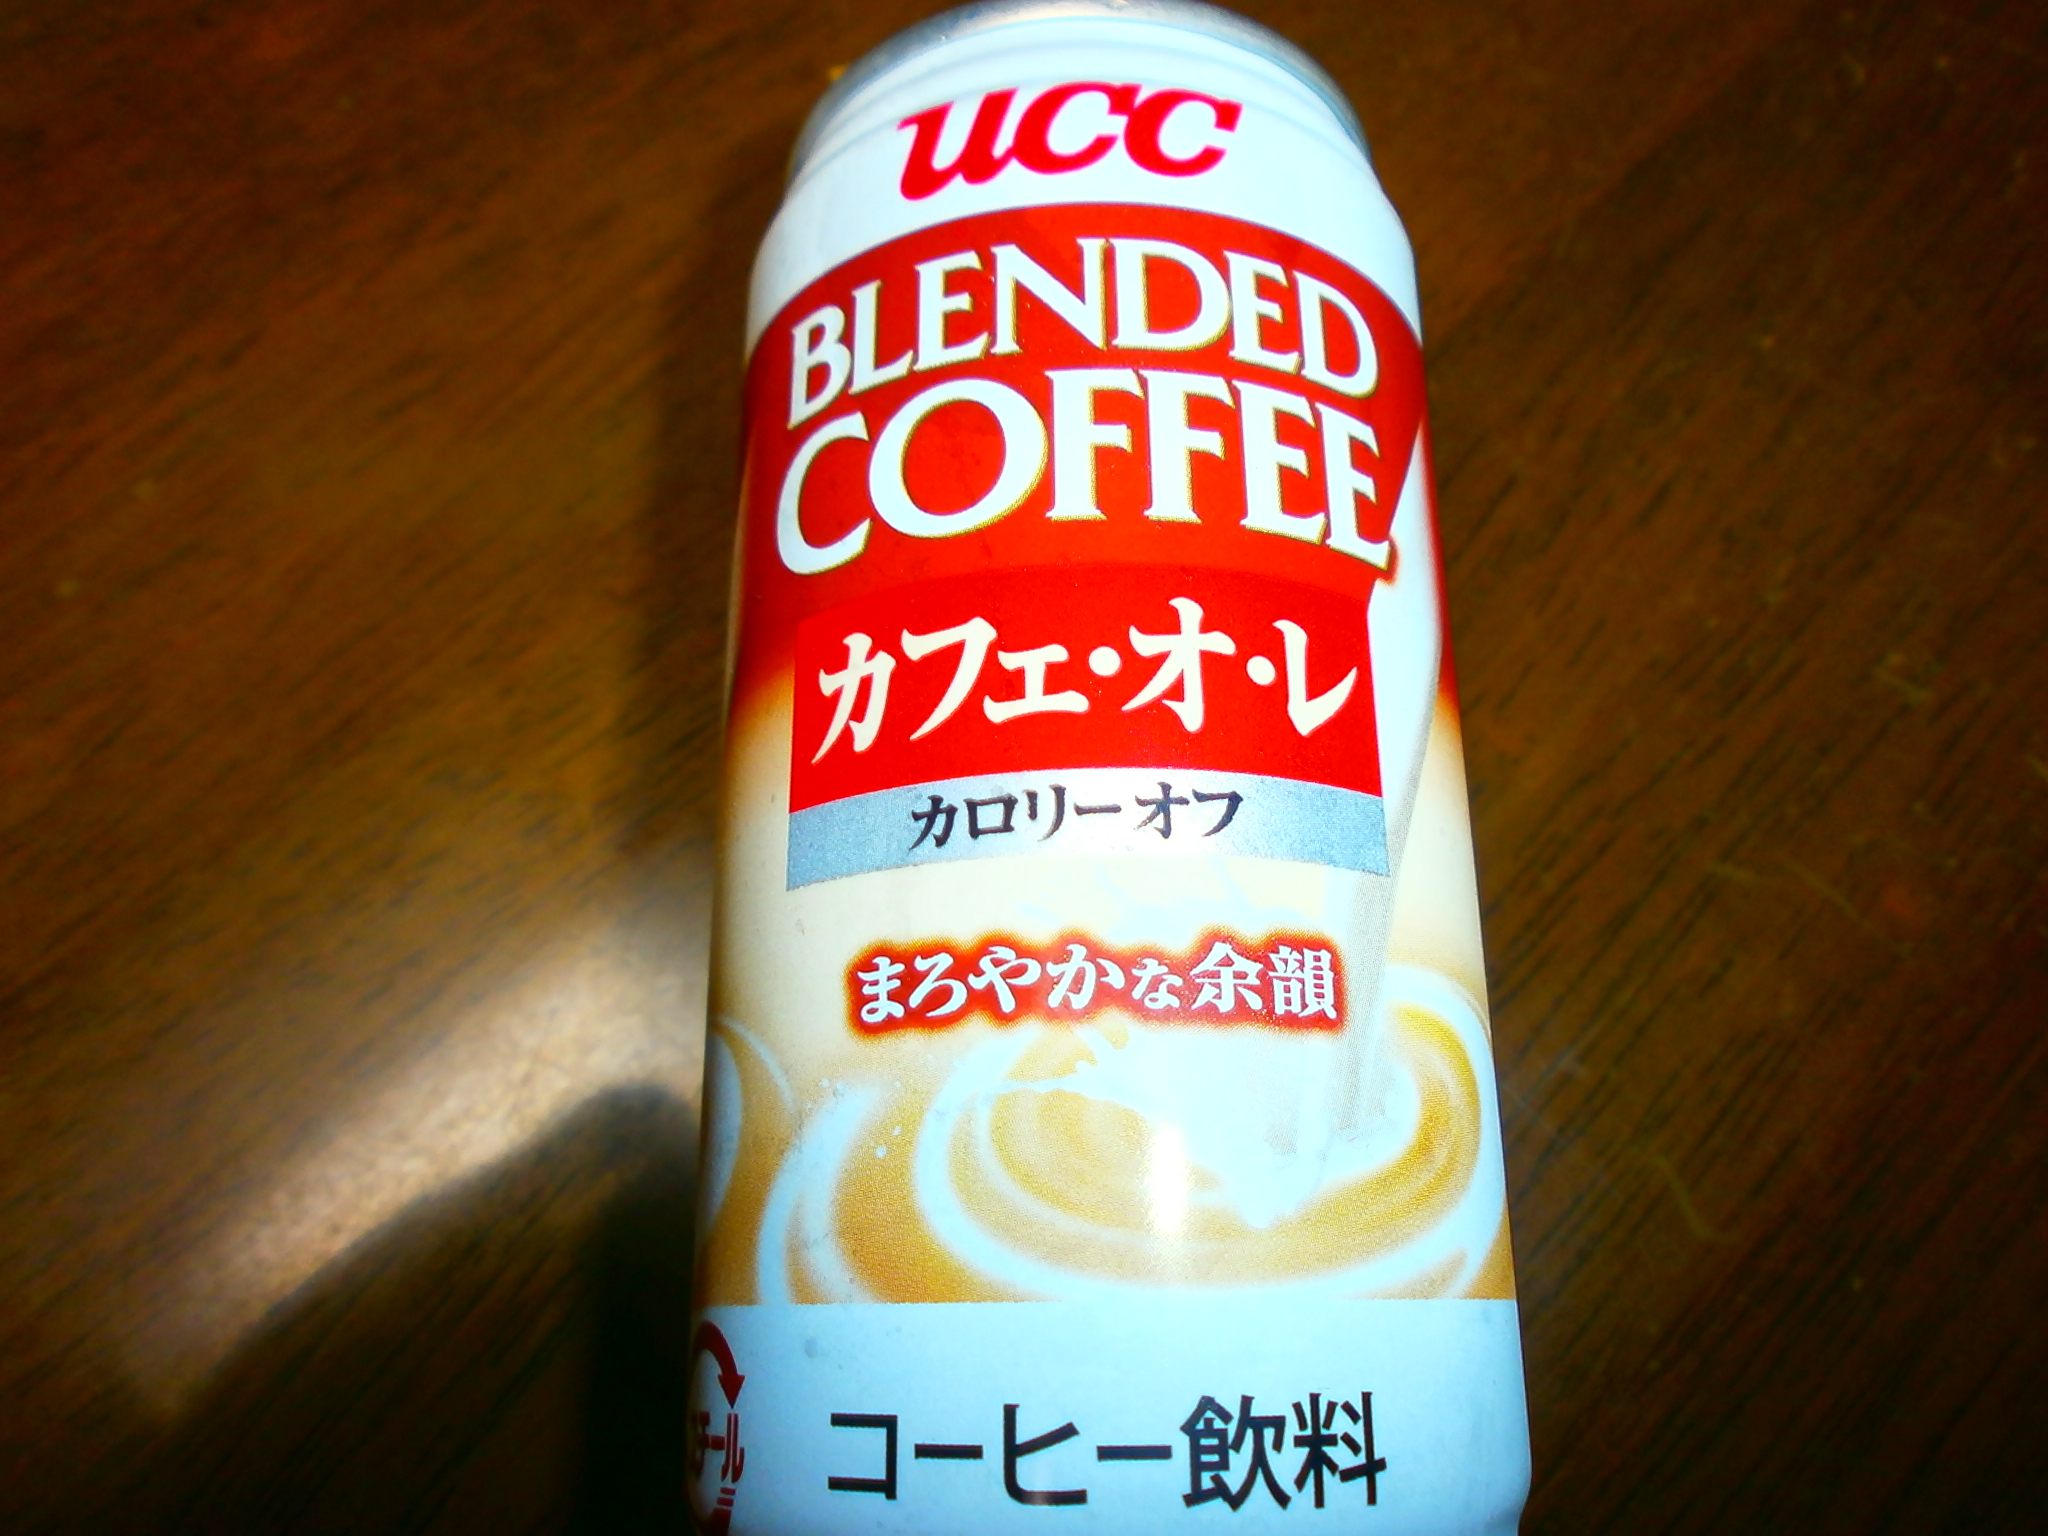 Café au lait calorias off (UCC)